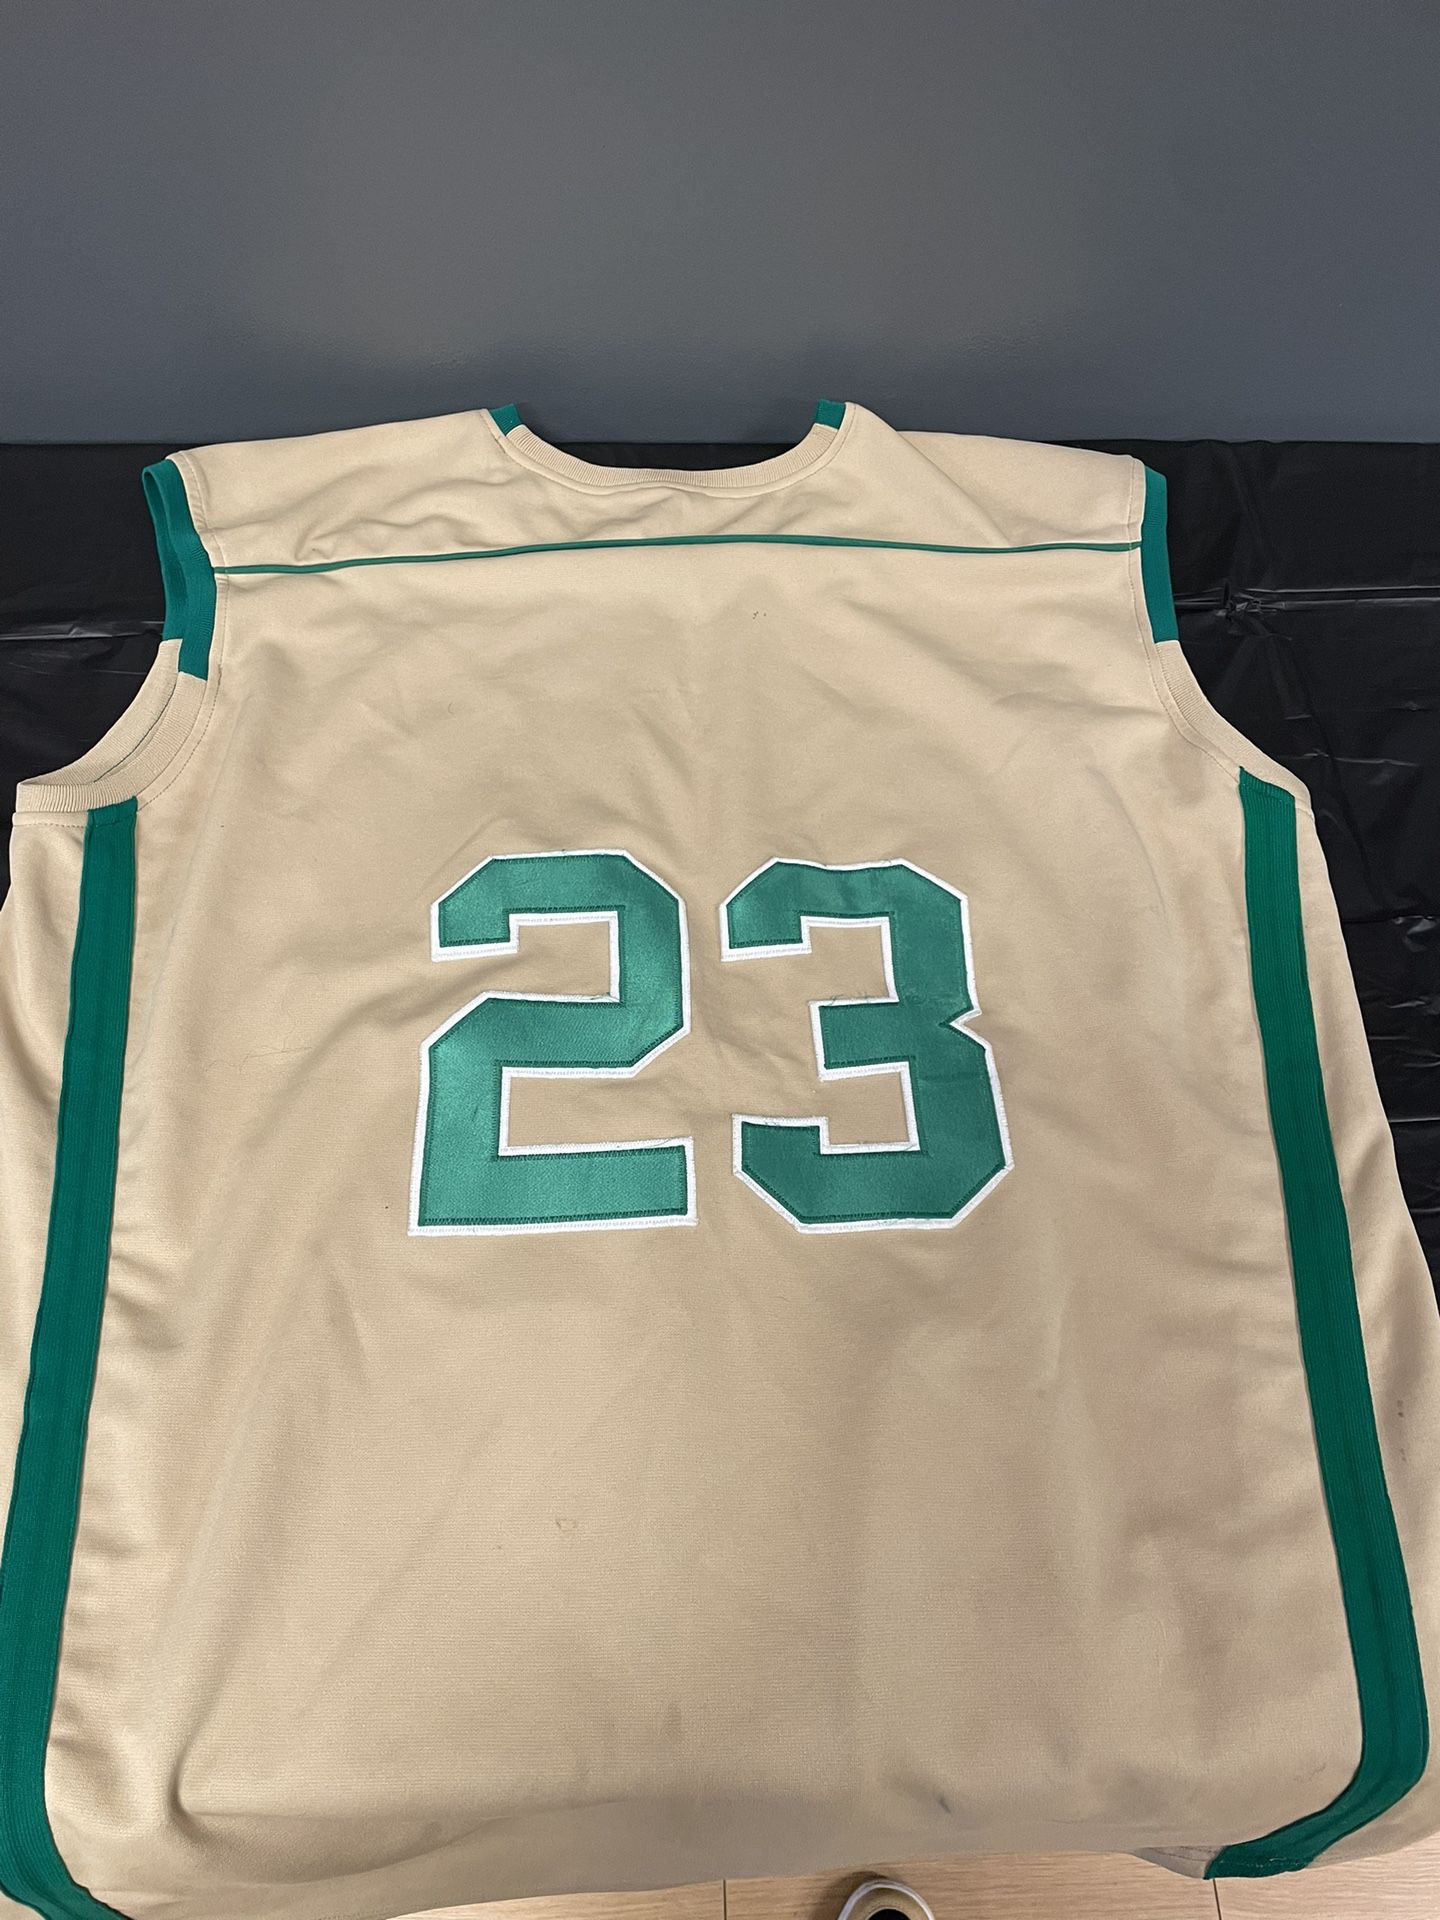 Lebron James highschool jersey for Sale in Phoenix, AZ - OfferUp